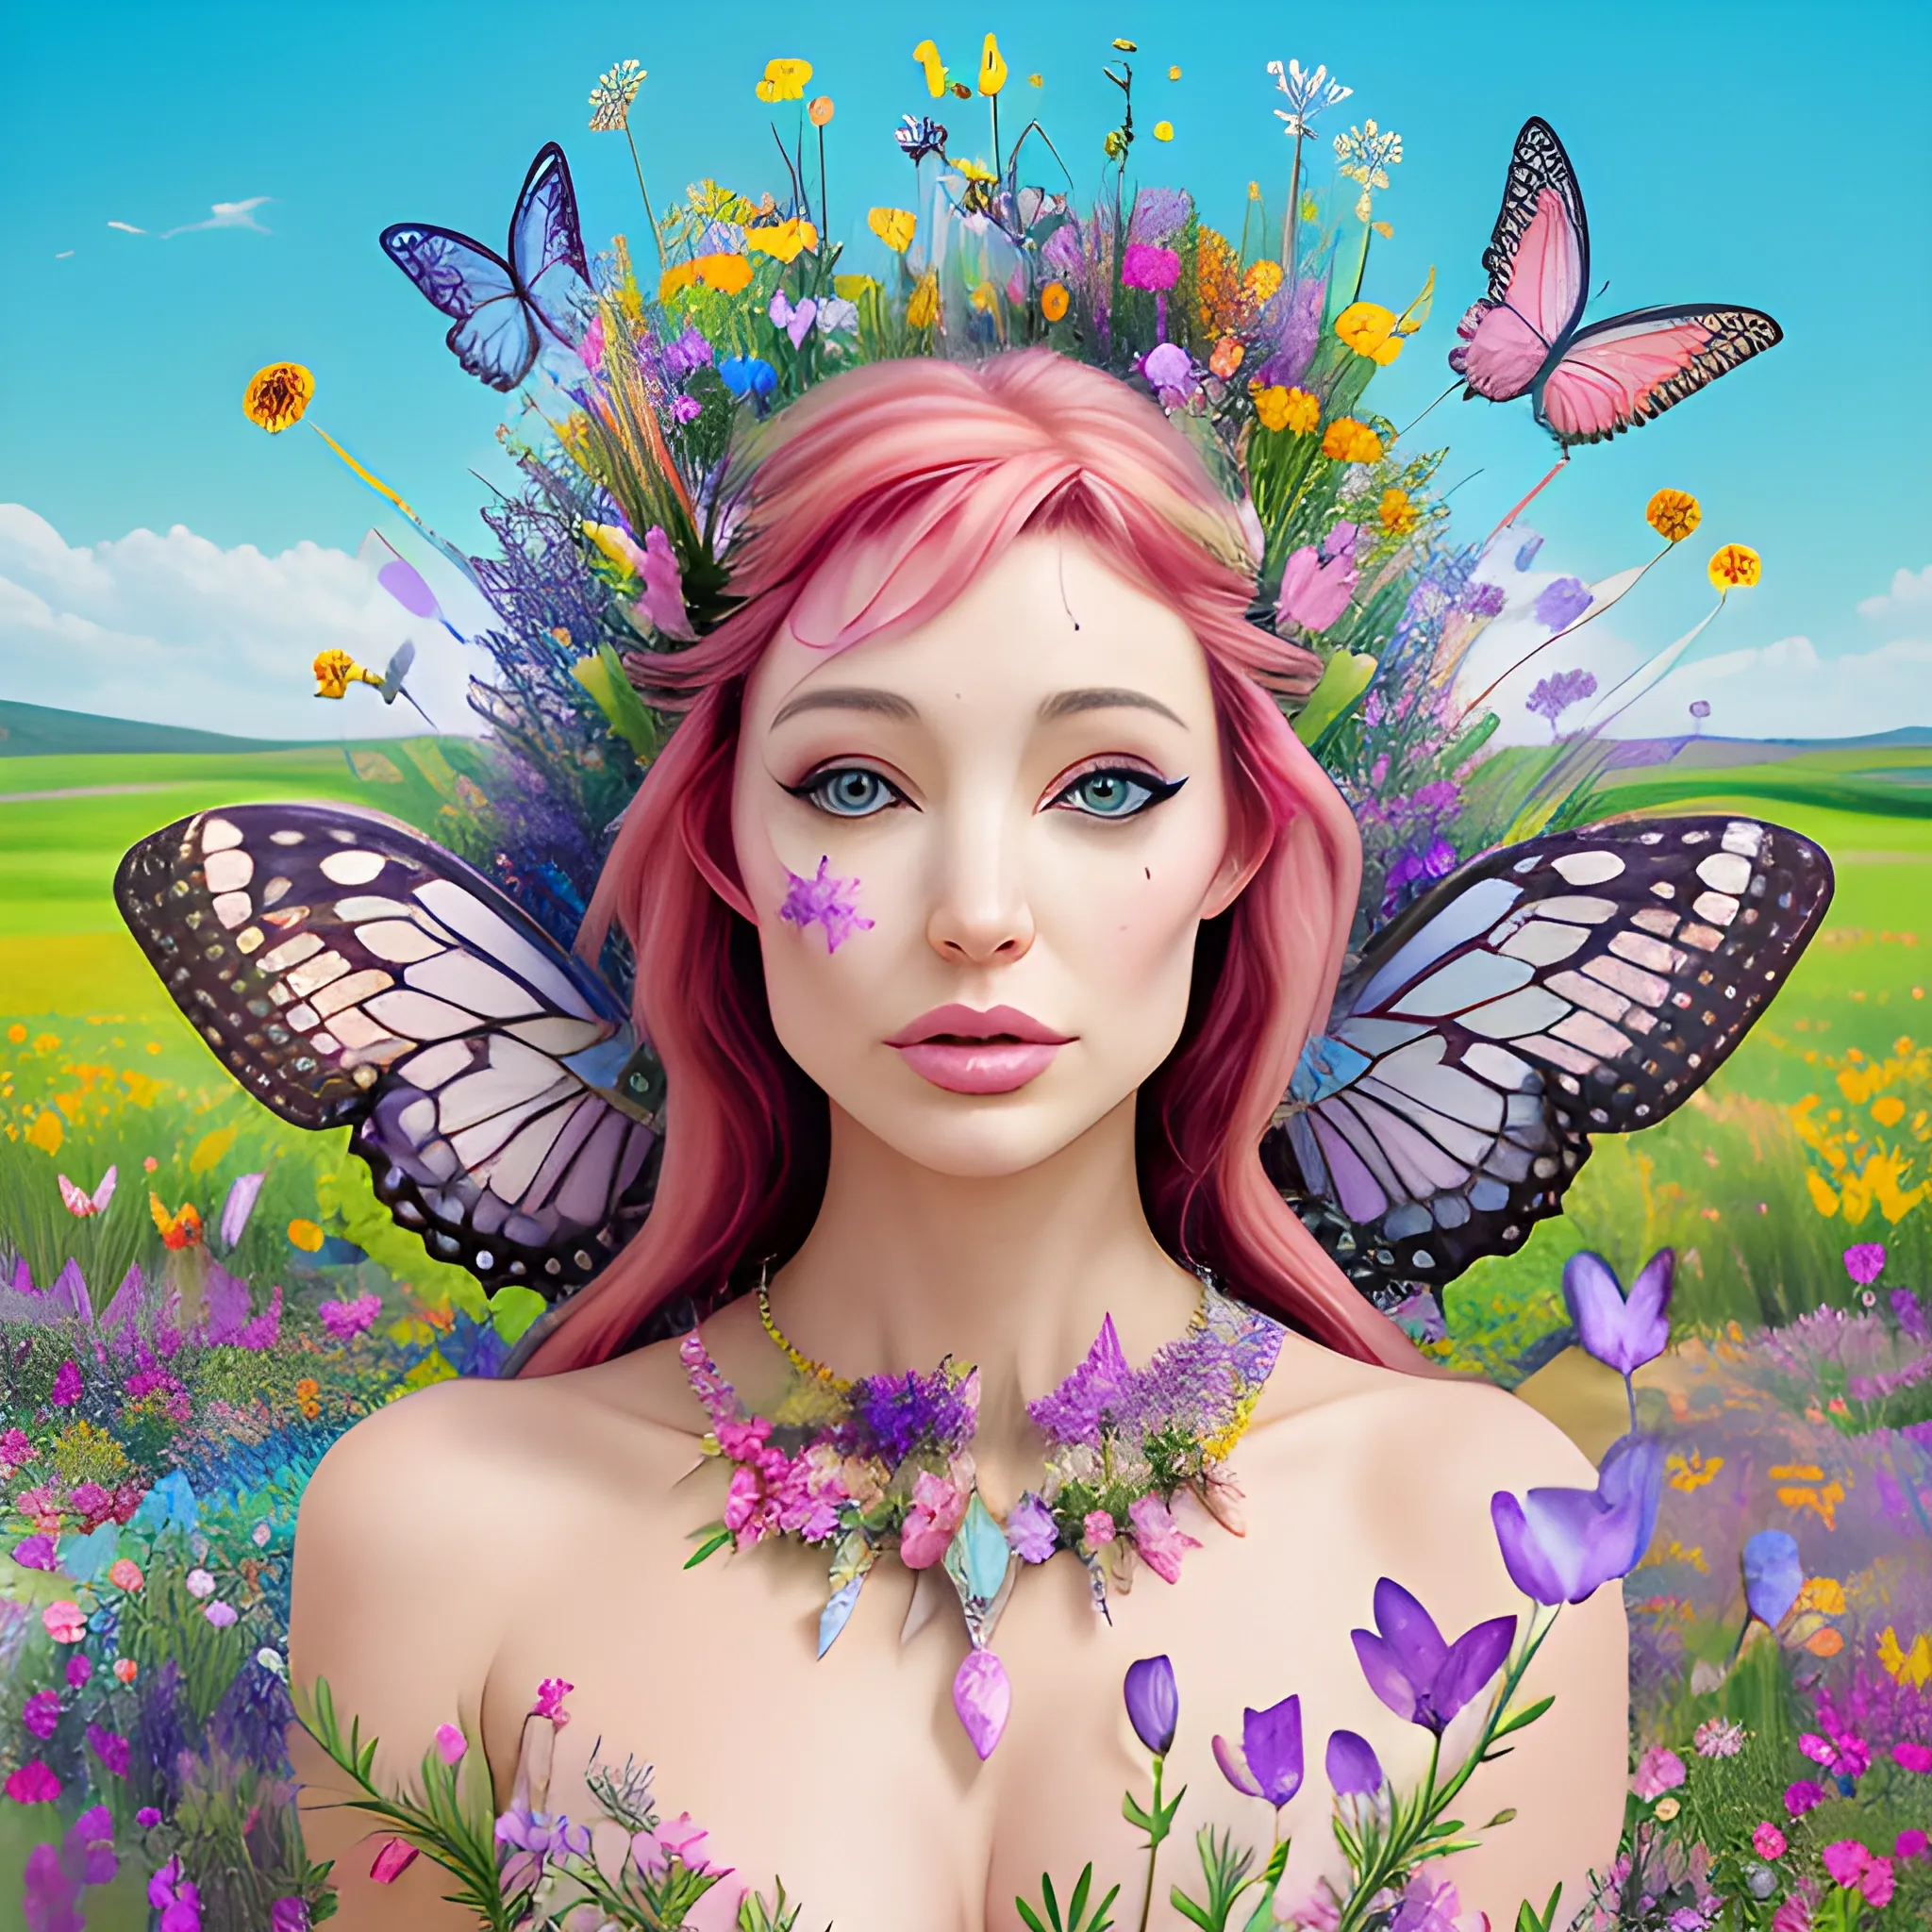 jolie femme elfique debout avec un arc des bijoux divers et excentrique dans une prairie fleurie et des papillons multicolores qui volent autour de la jolie femme debout dans la prairie fleurie de beaucoup de fleurs exotiques colorées, 4K ultra , Trippy, Oil Painting, 3D